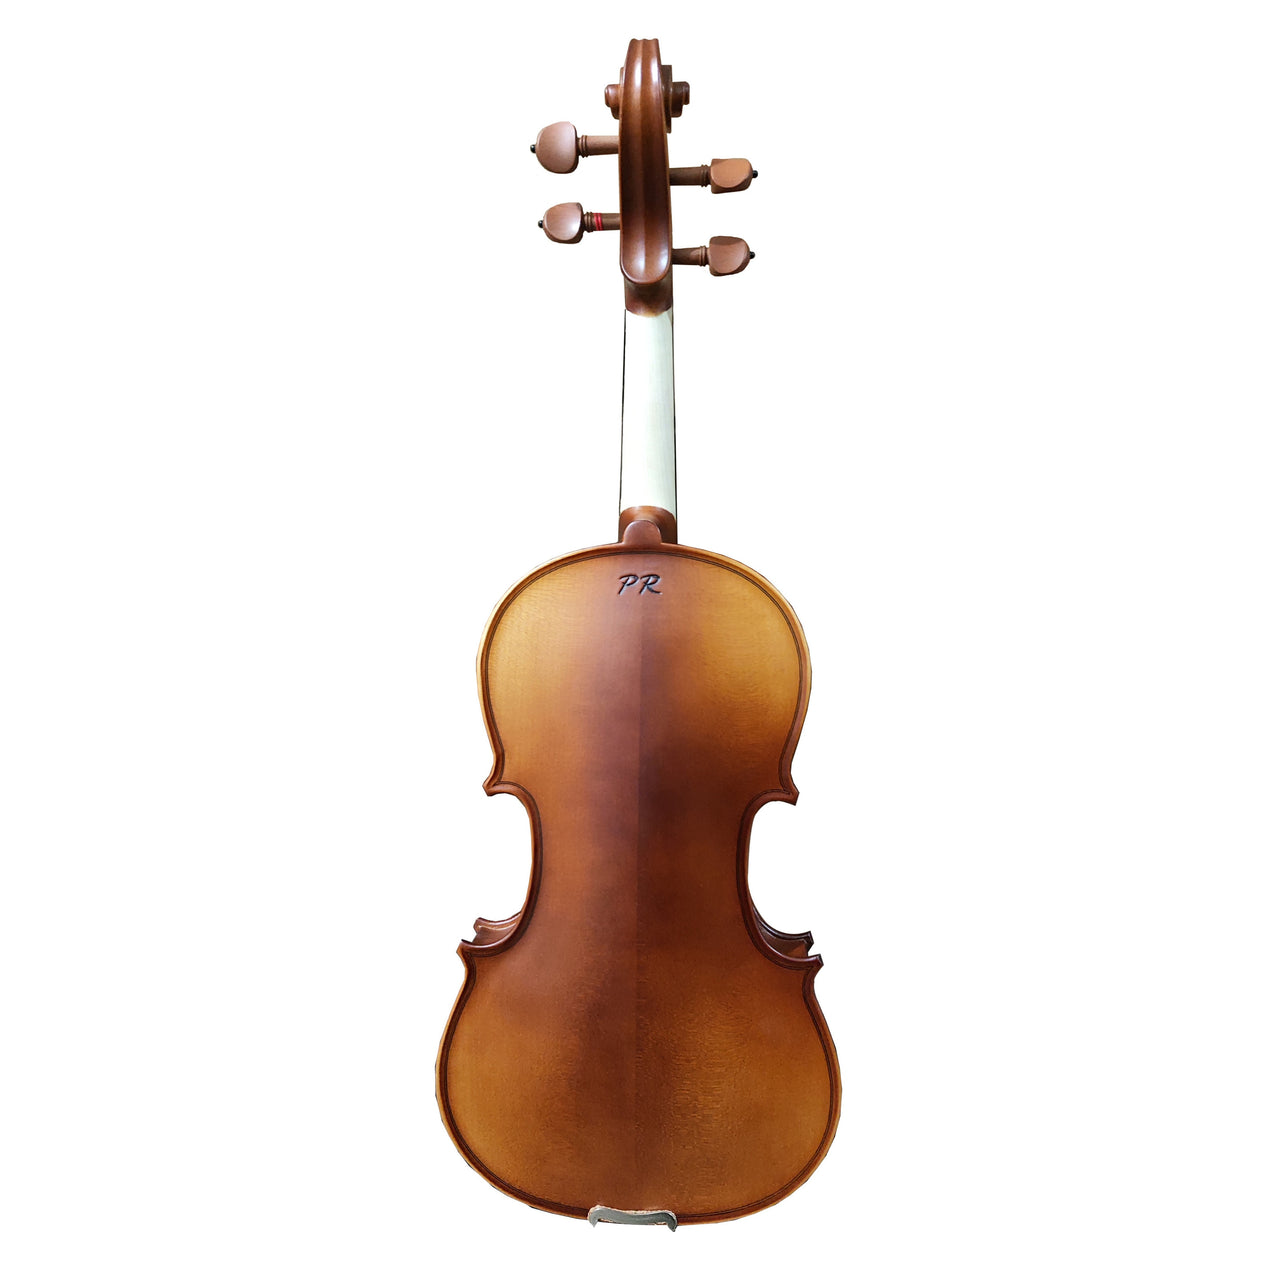 Violin Pearl River Tipo Antiguo C/arco Y Estuche 4/4, Mv006